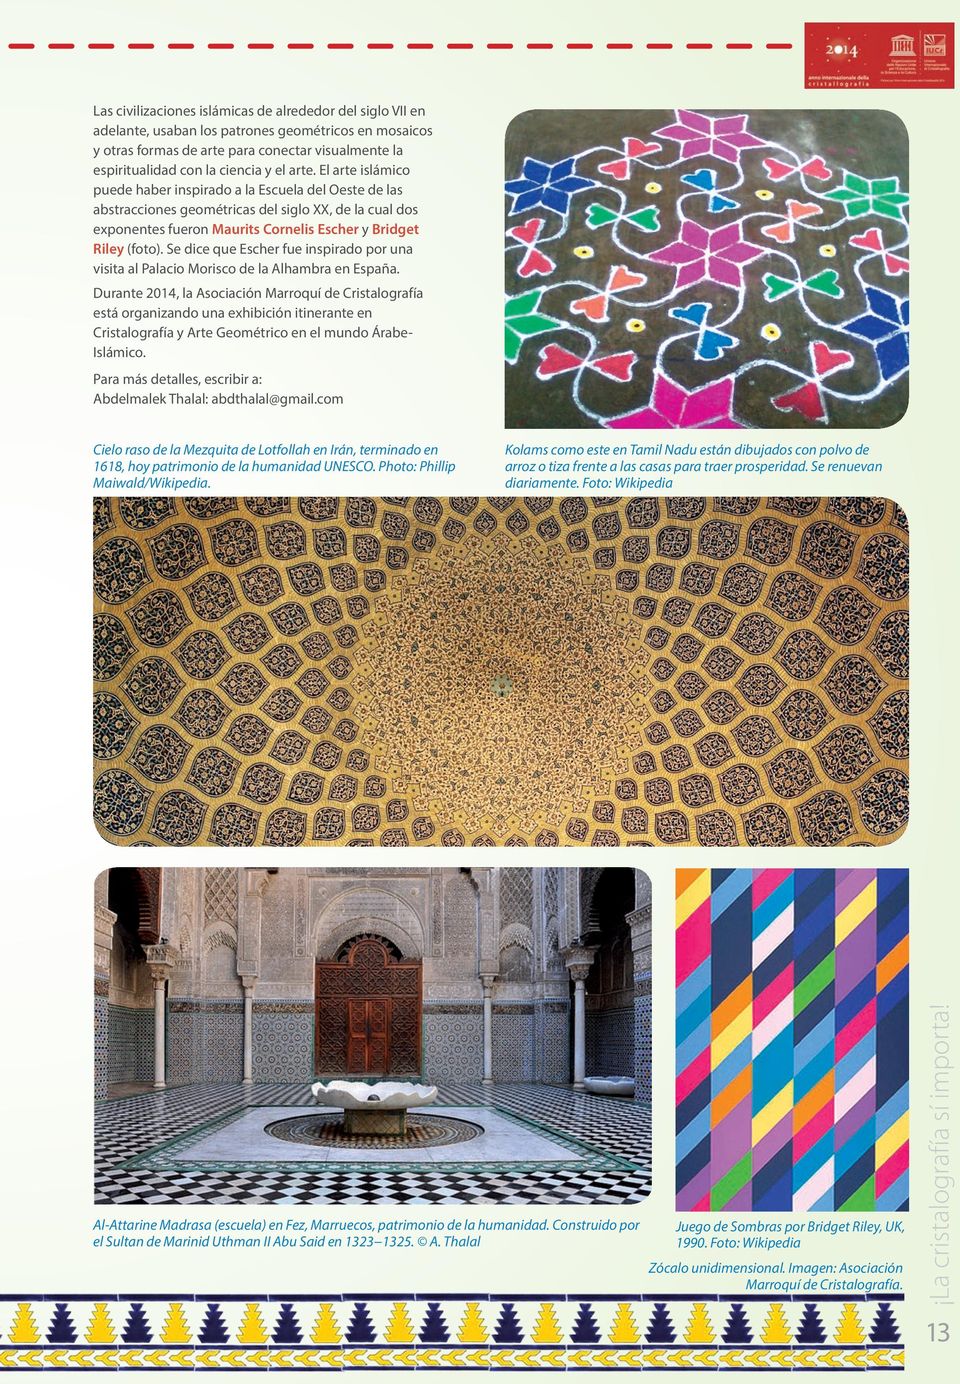 Se dice que Escher fue inspirado por una visita al Palacio Morisco de la Alhambra en España.